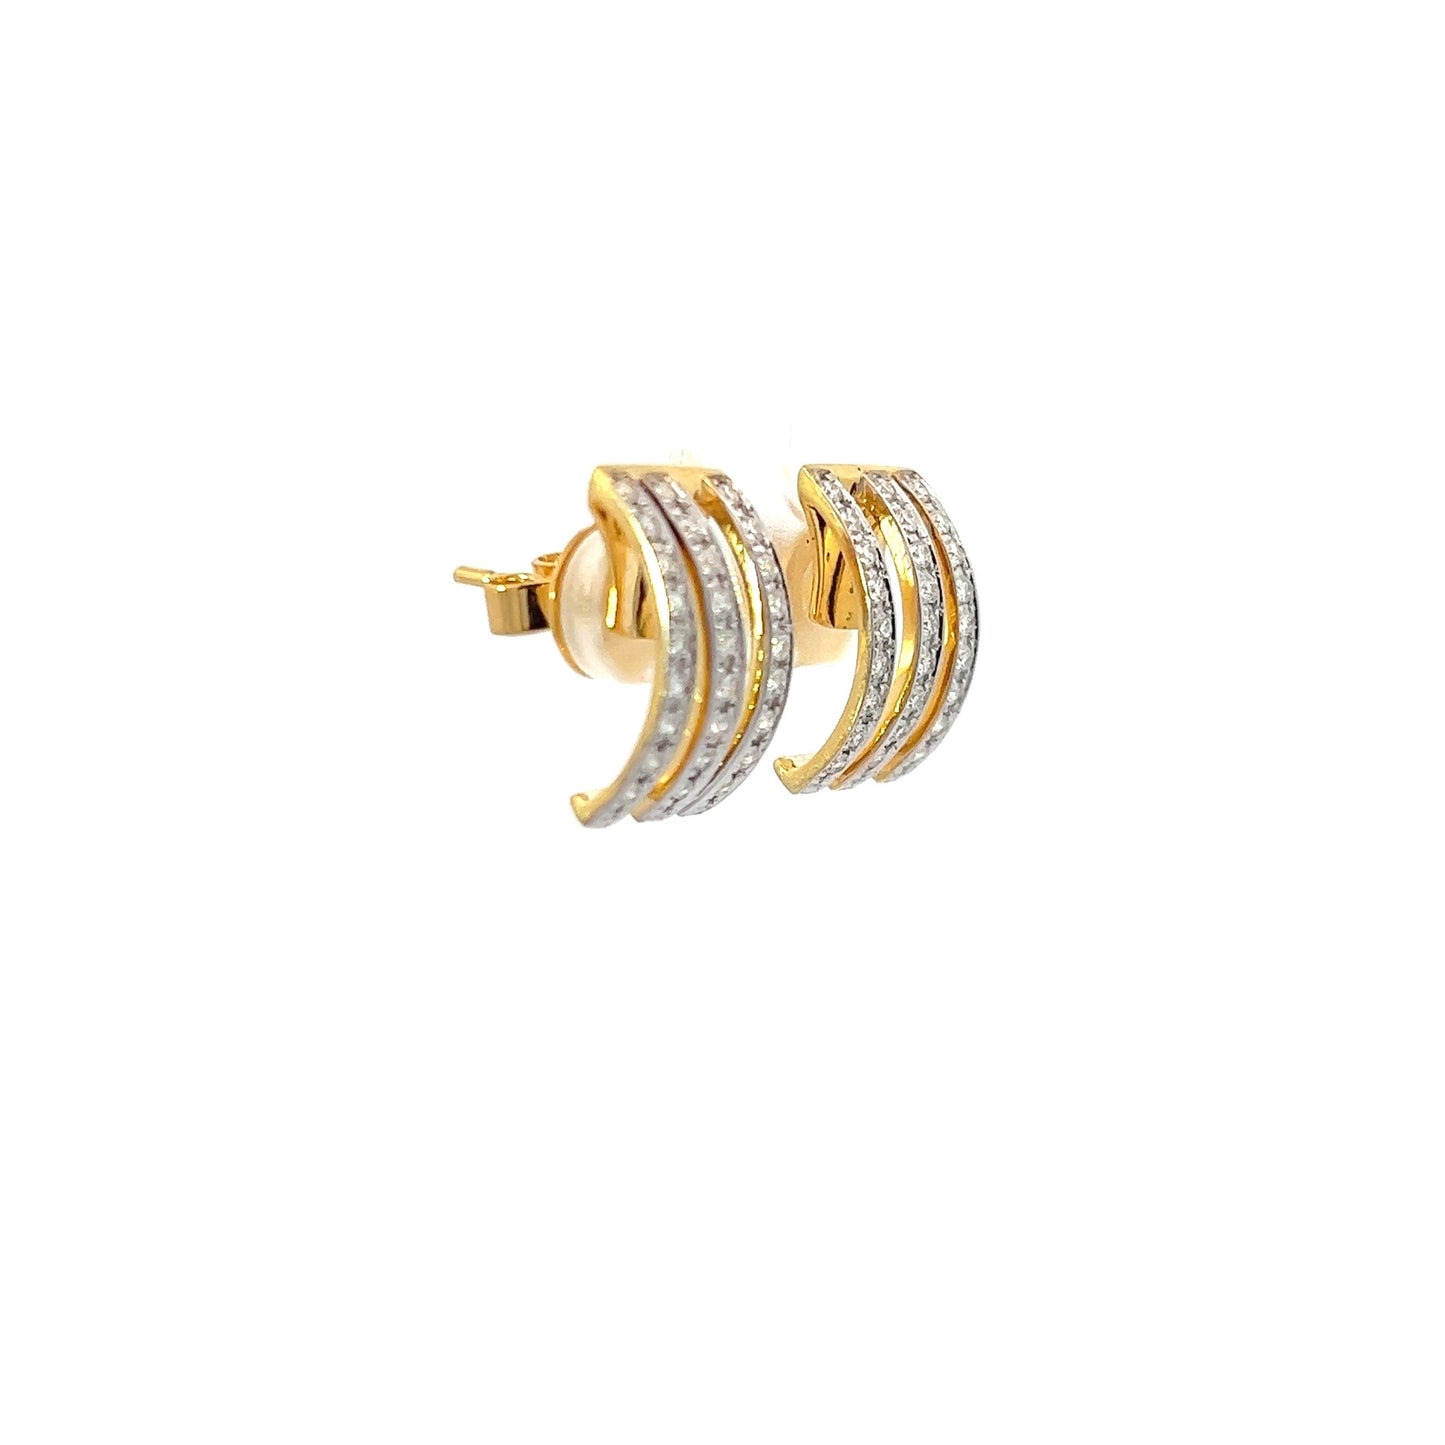 Earrings w/ 54 Diamonds 14K Yellow Gold